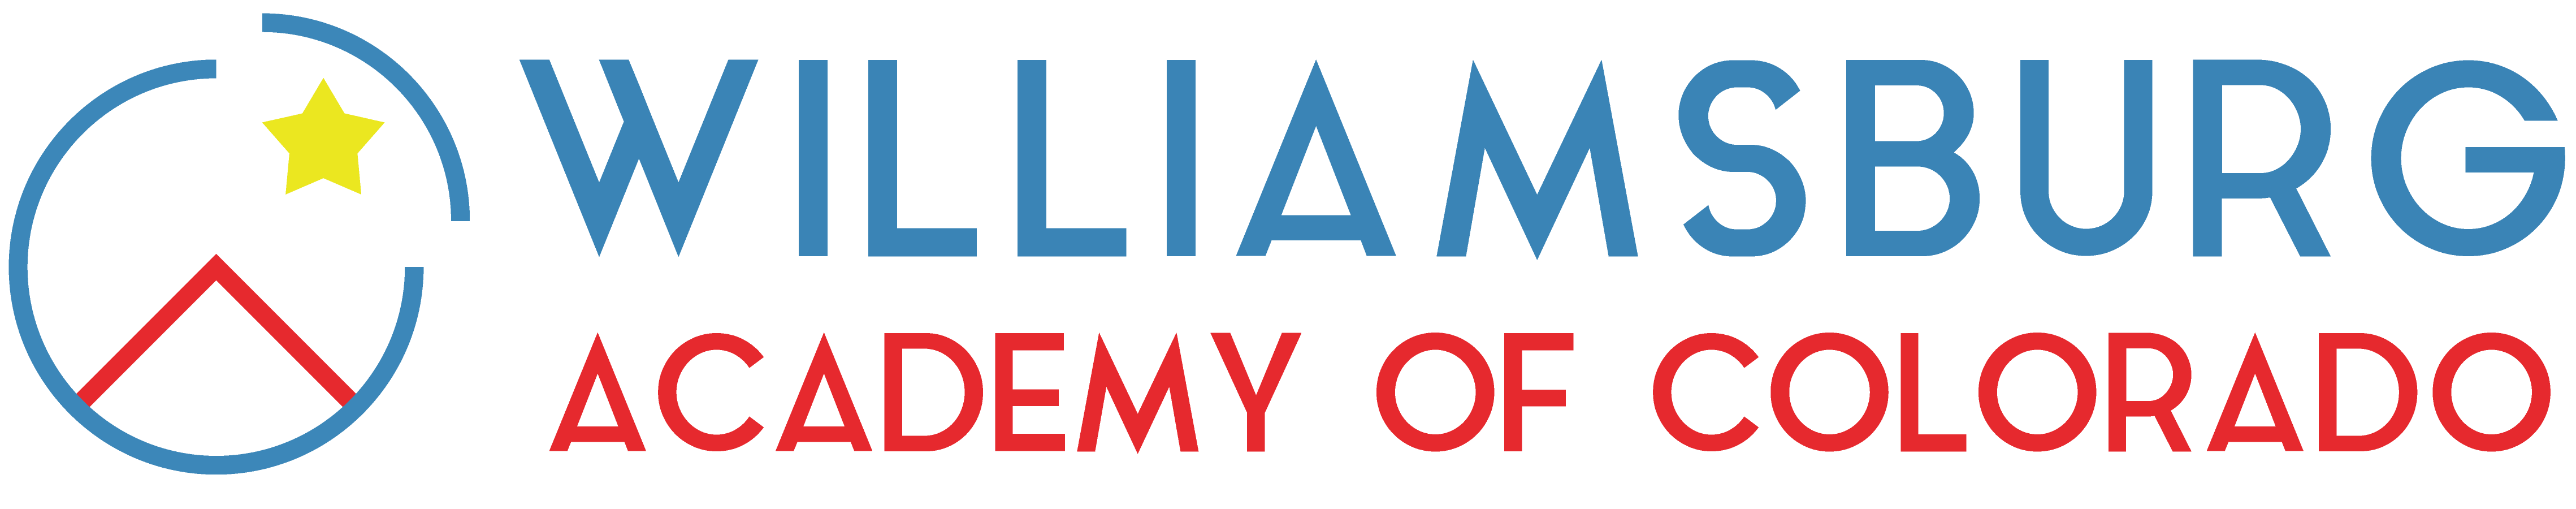 Williamsburg-Academy-Colorado-logo